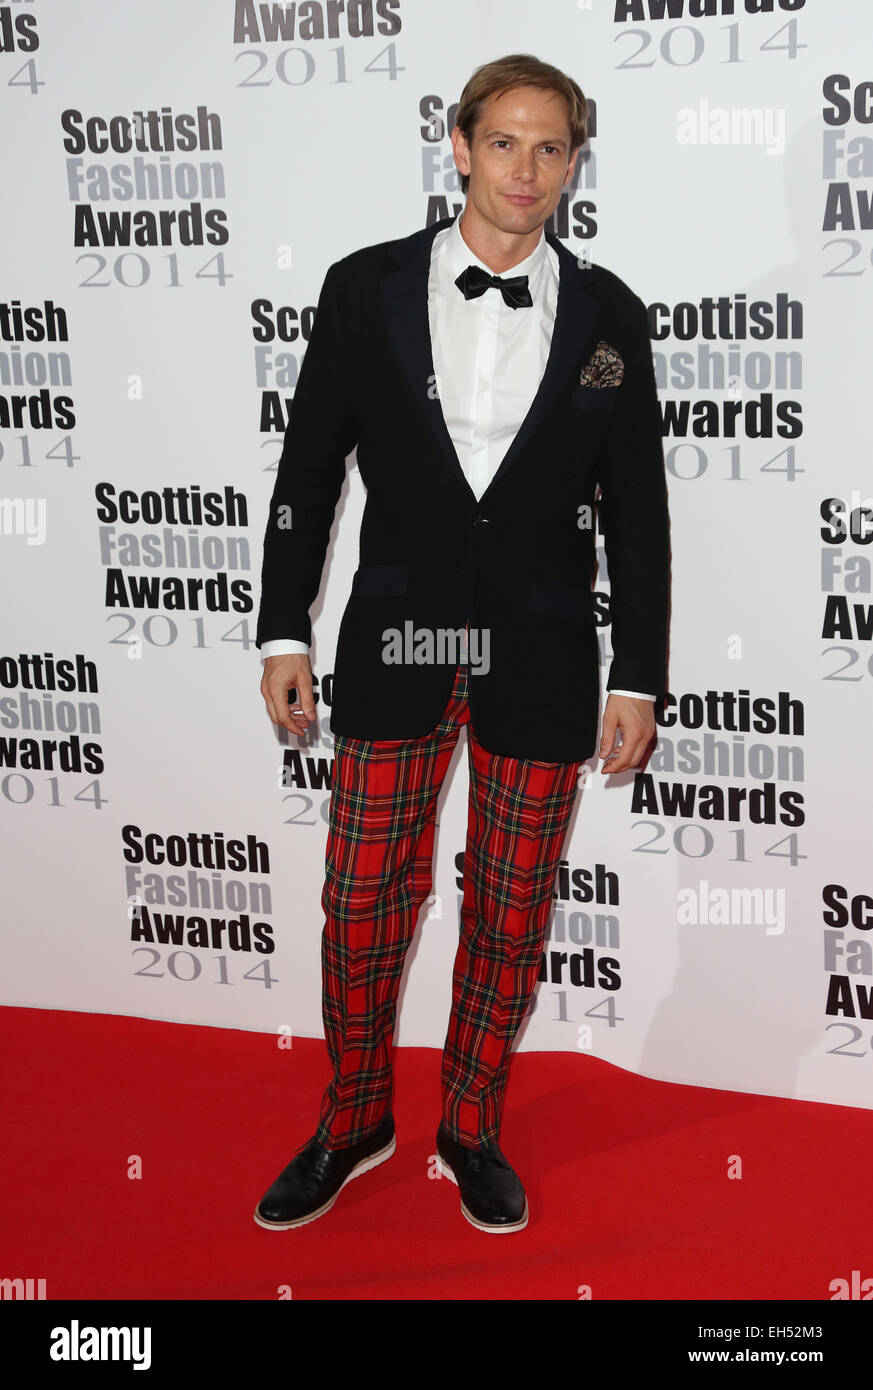 Schottischen Fashion Awards 2014 statt 8 Northumberland Avenue - Ankünfte Featuring: Mark Hogarth wo: London, Vereinigtes Königreich bei: 01 Sep 2014 Stockfoto